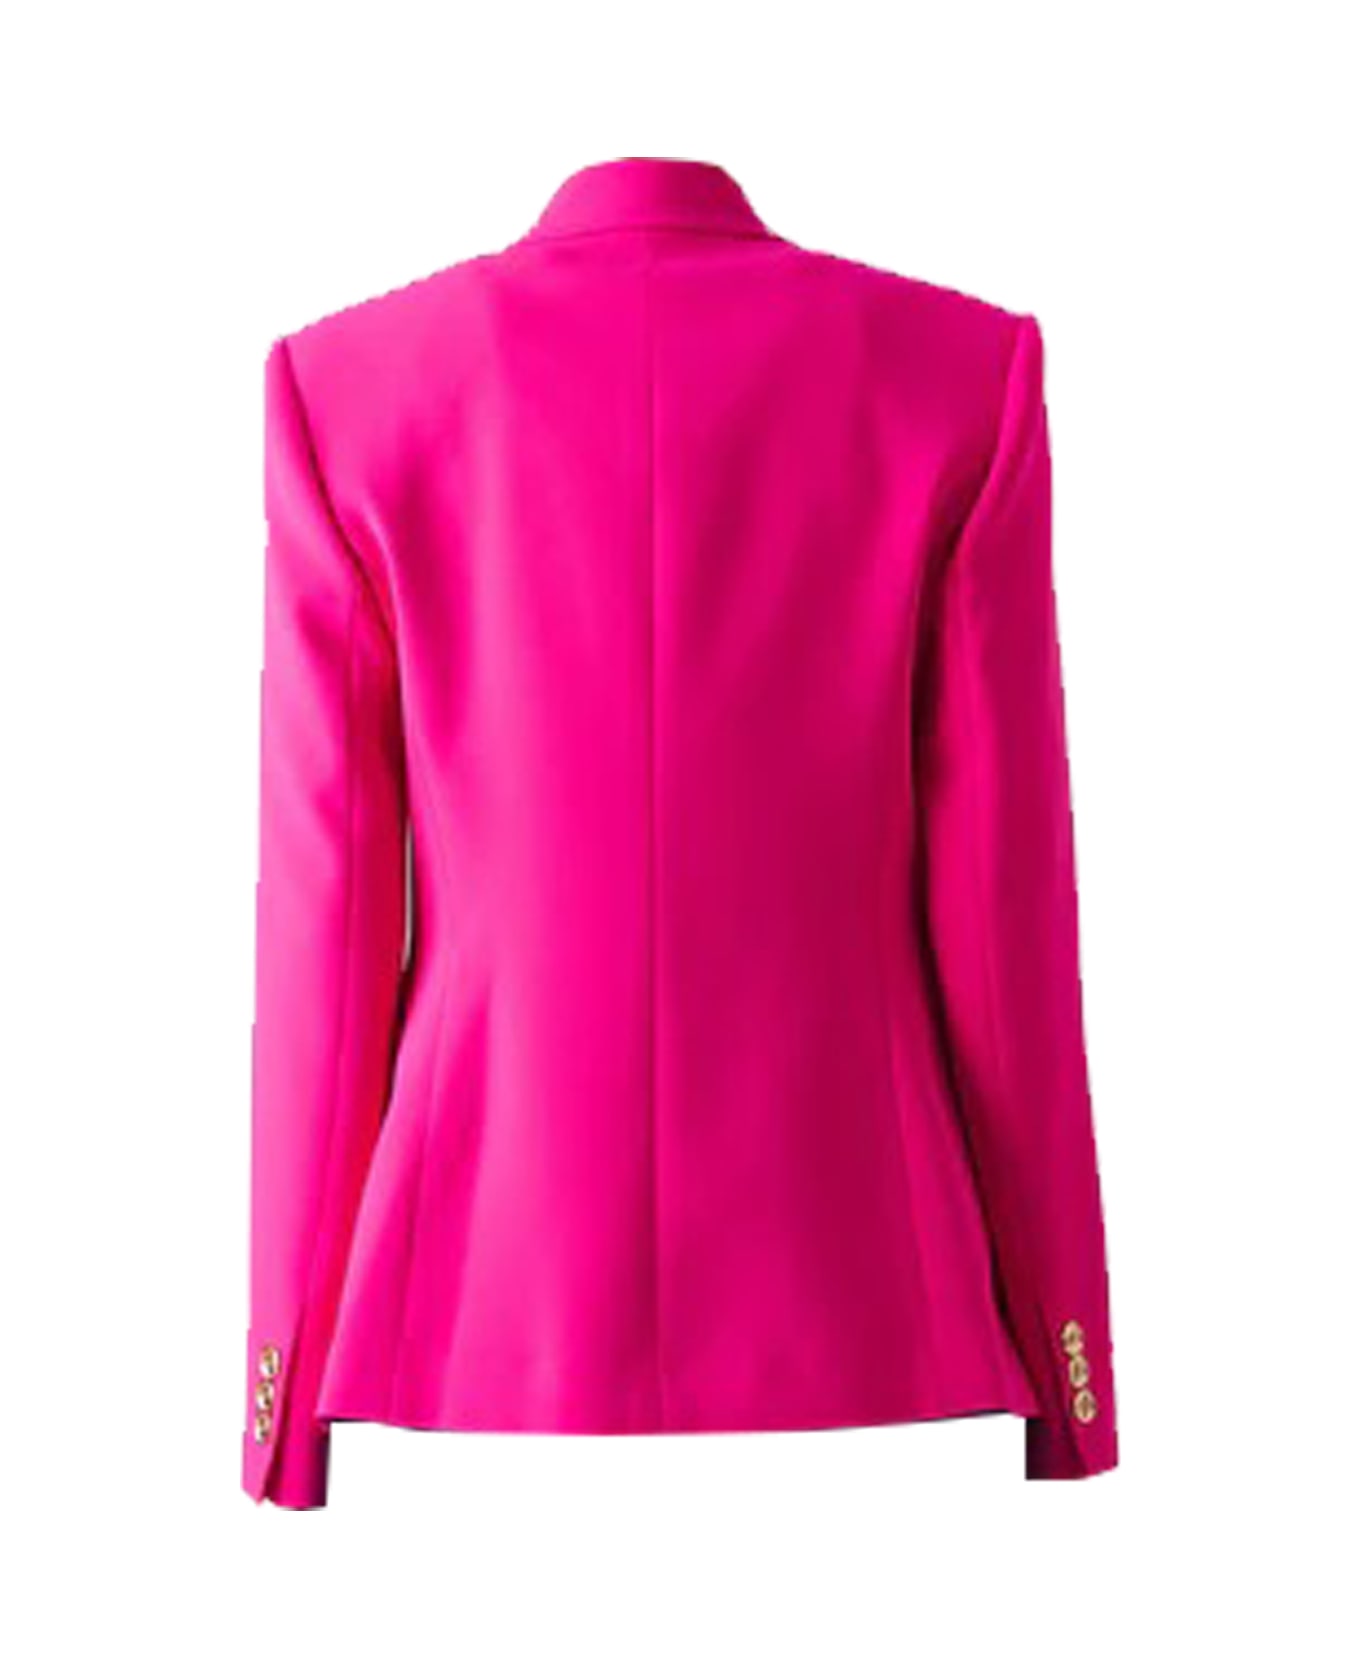 Pinko Jacket - Pink